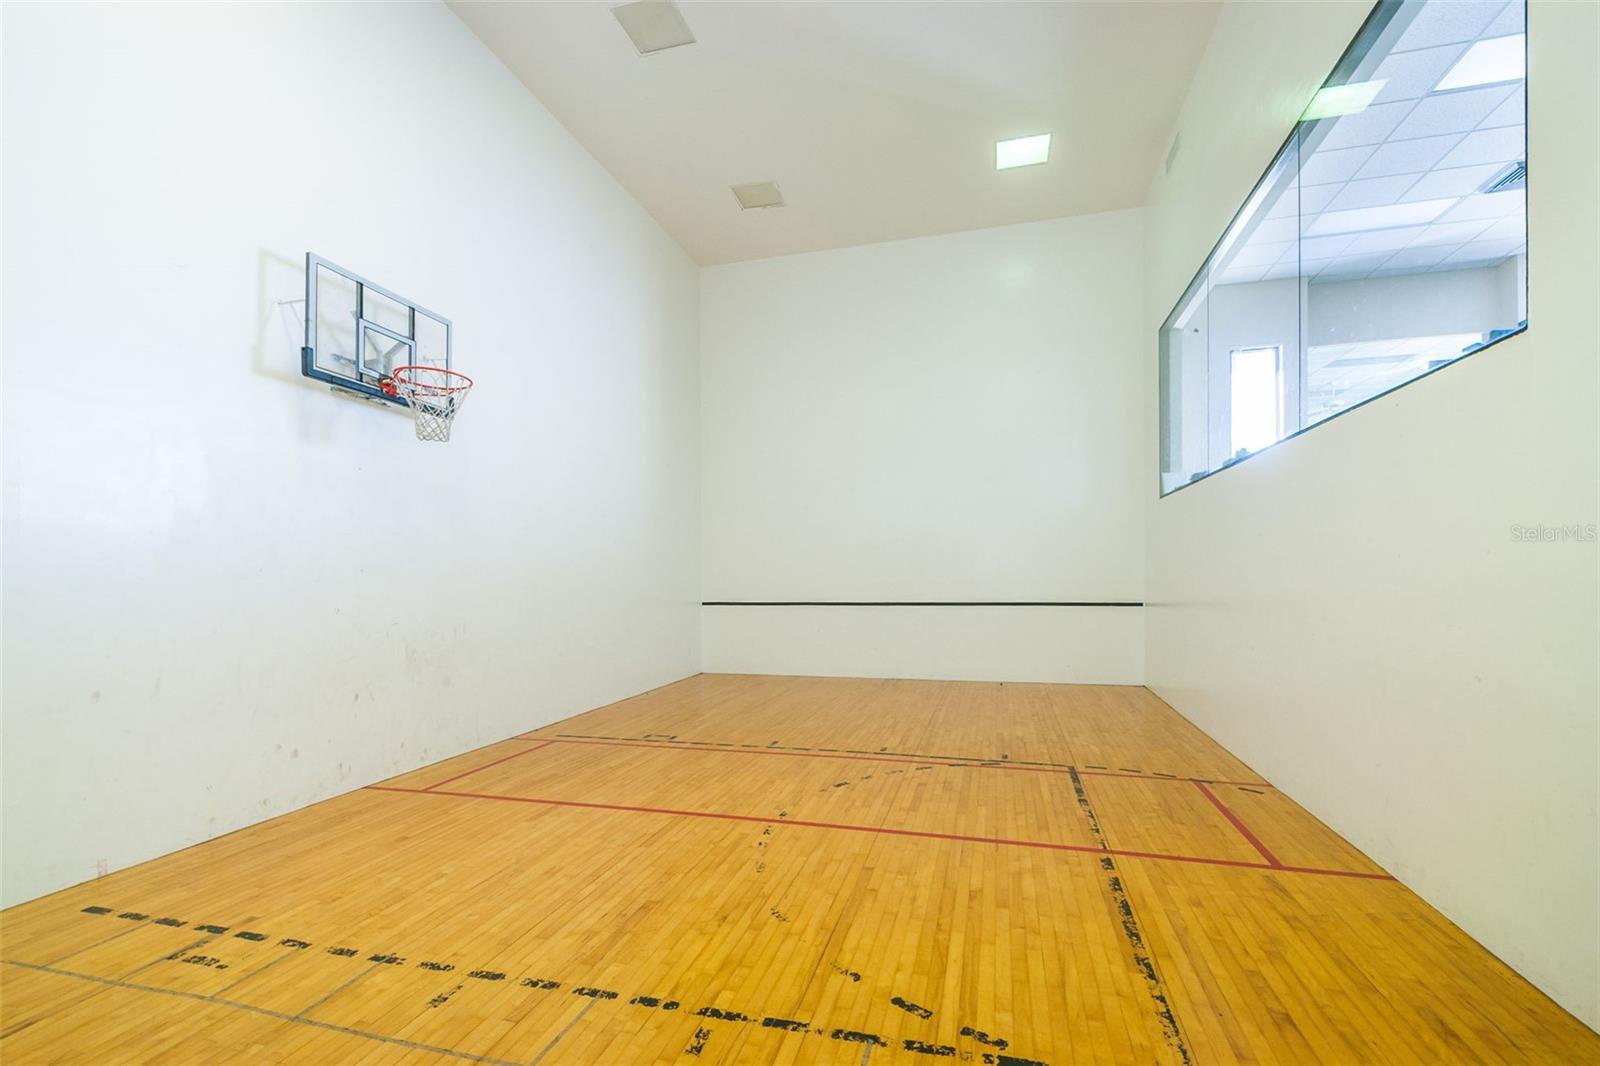 Basketball/racquetball court